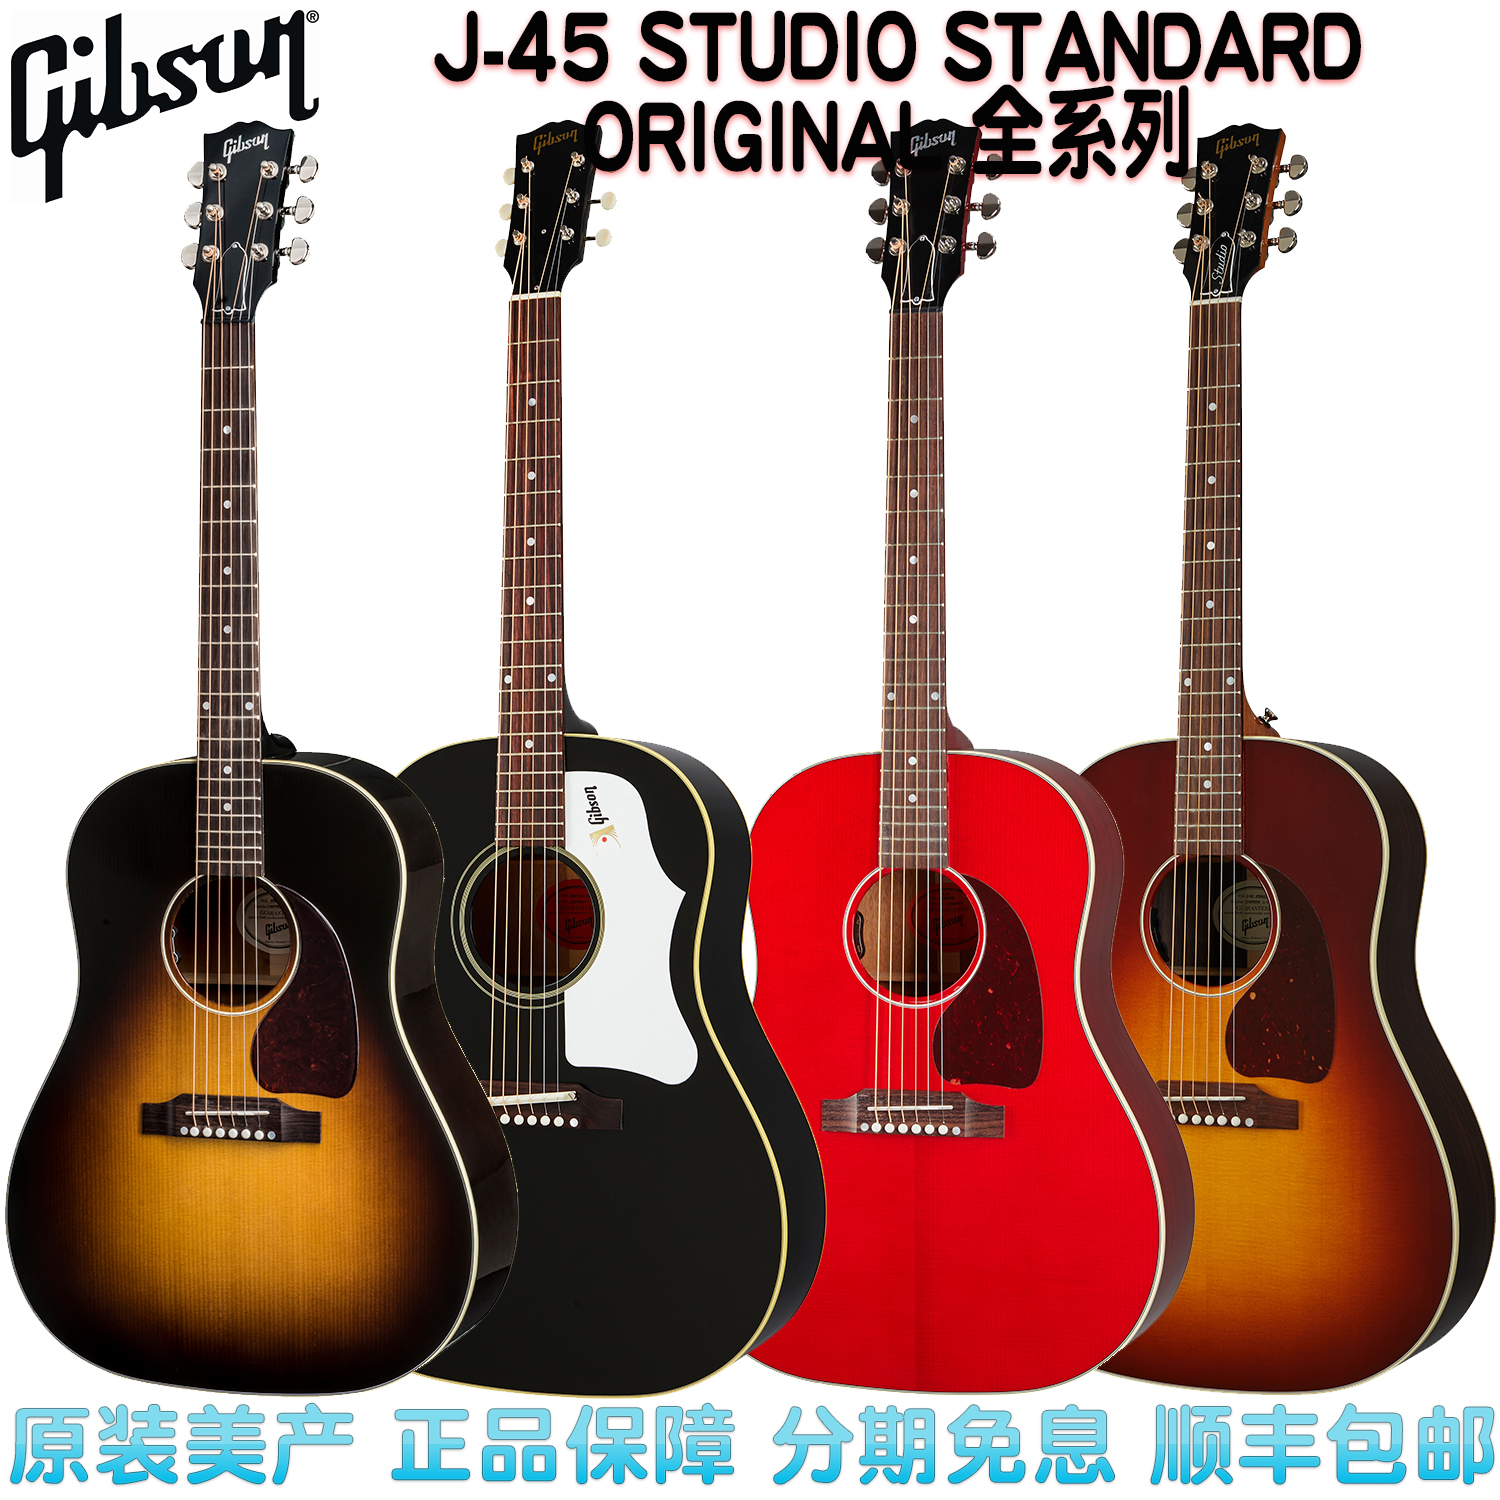 吉普森 GIBSON J45 STANDARD ORIGINAL STUDIO美产全单民谣木吉他